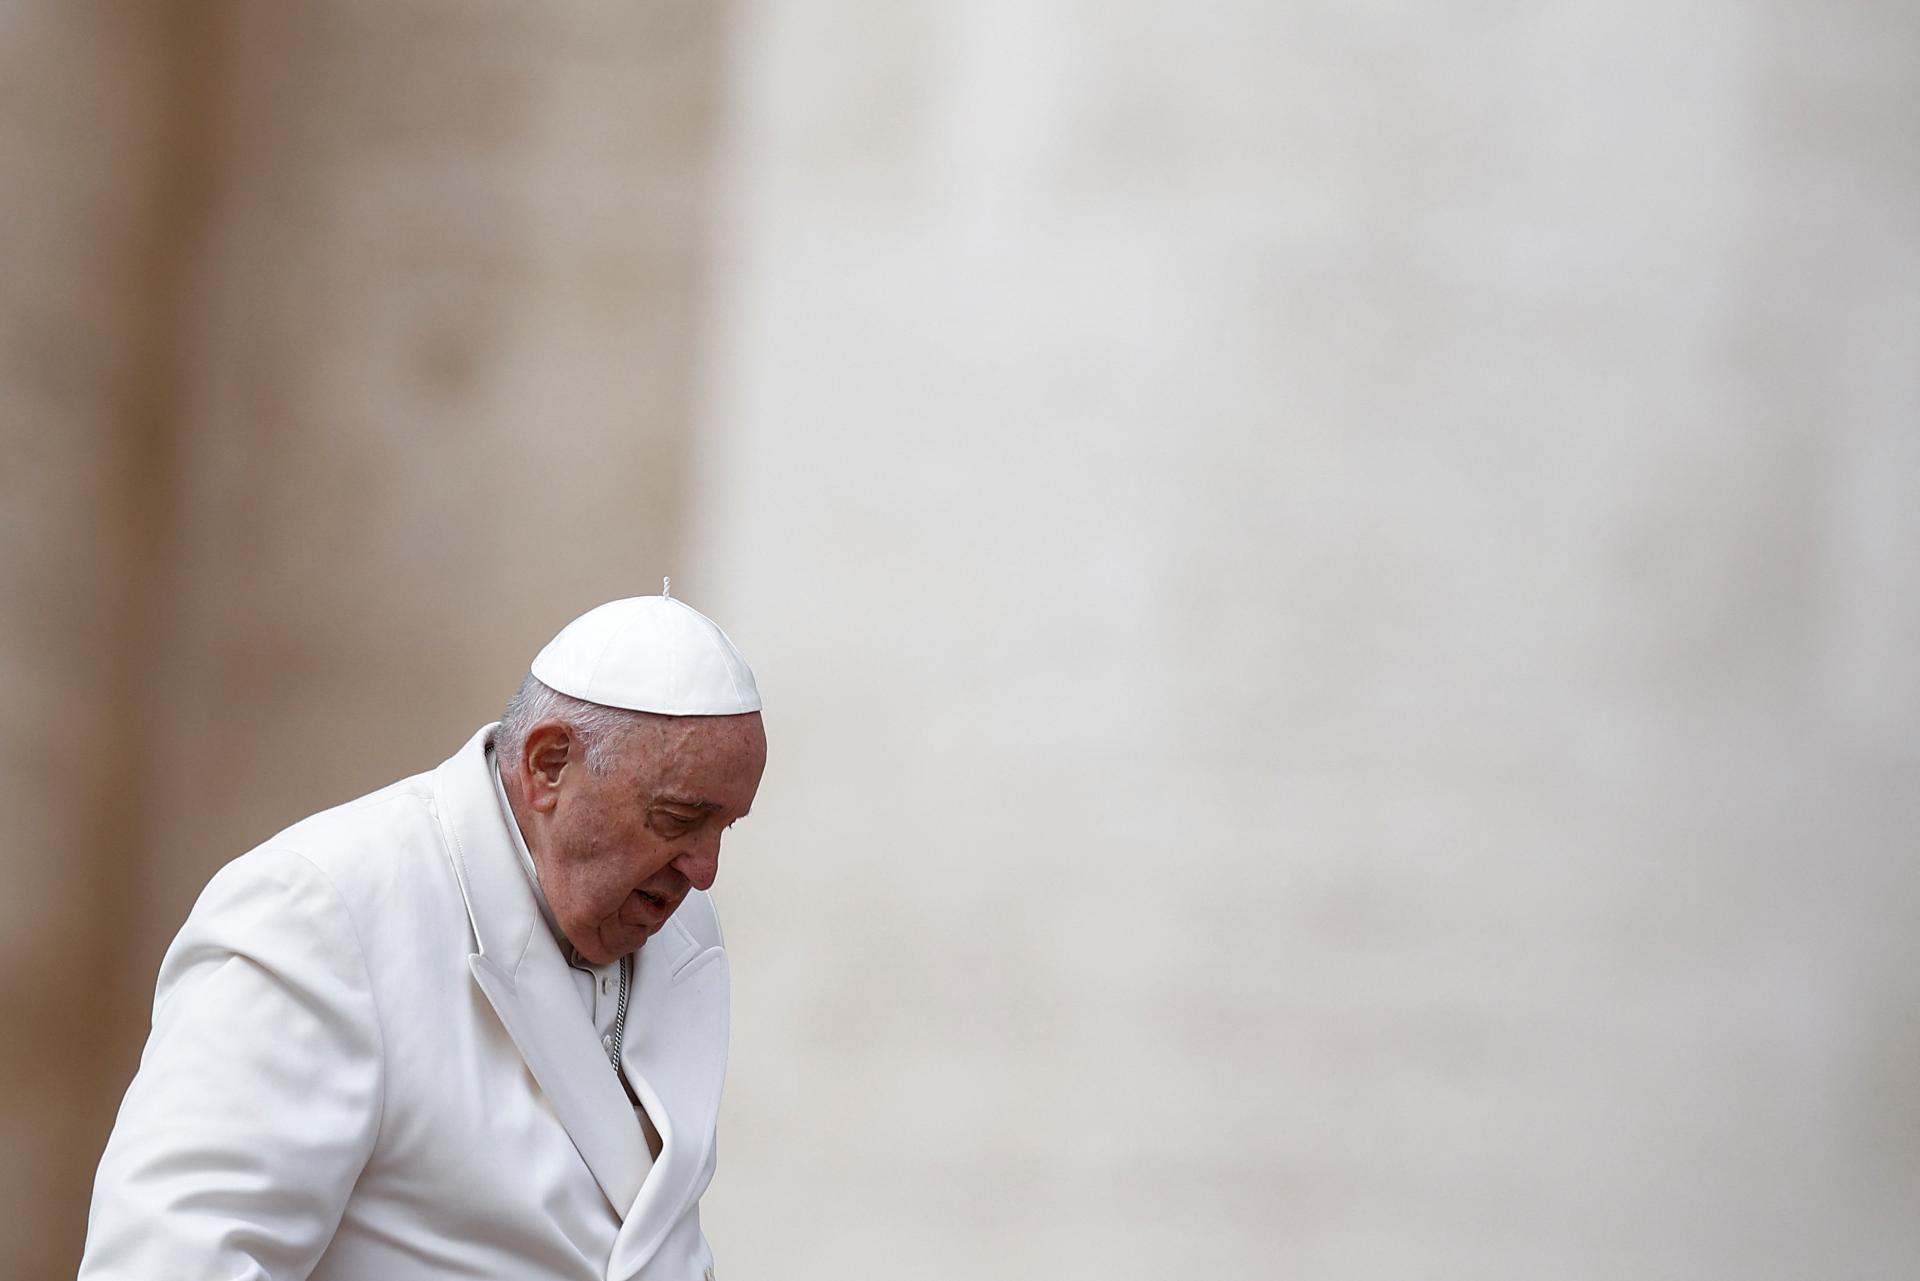 La salud de papa Francisco mejora, Türkiye transmite su deseo de pronta recuperación